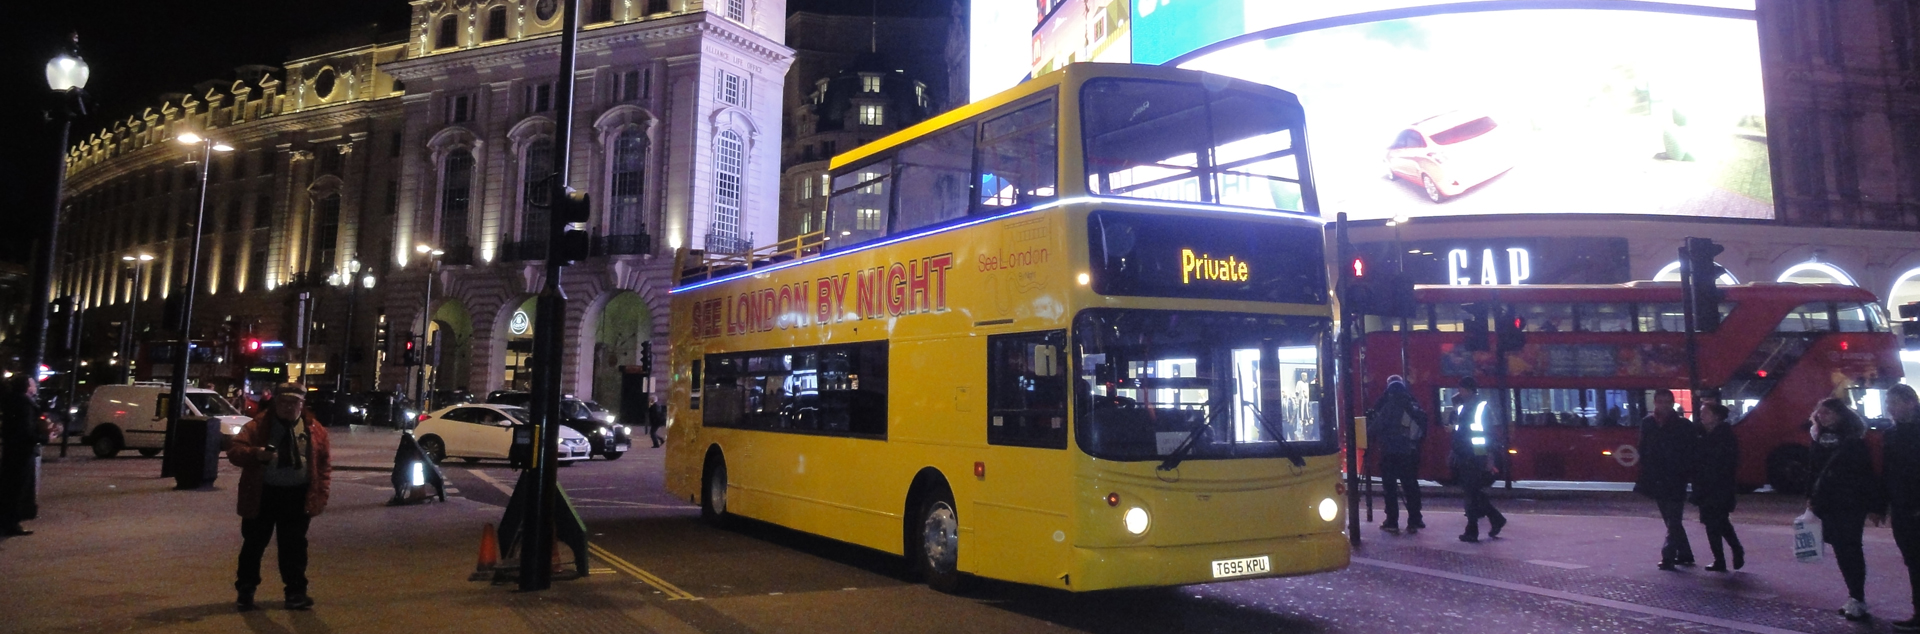 night tour bus